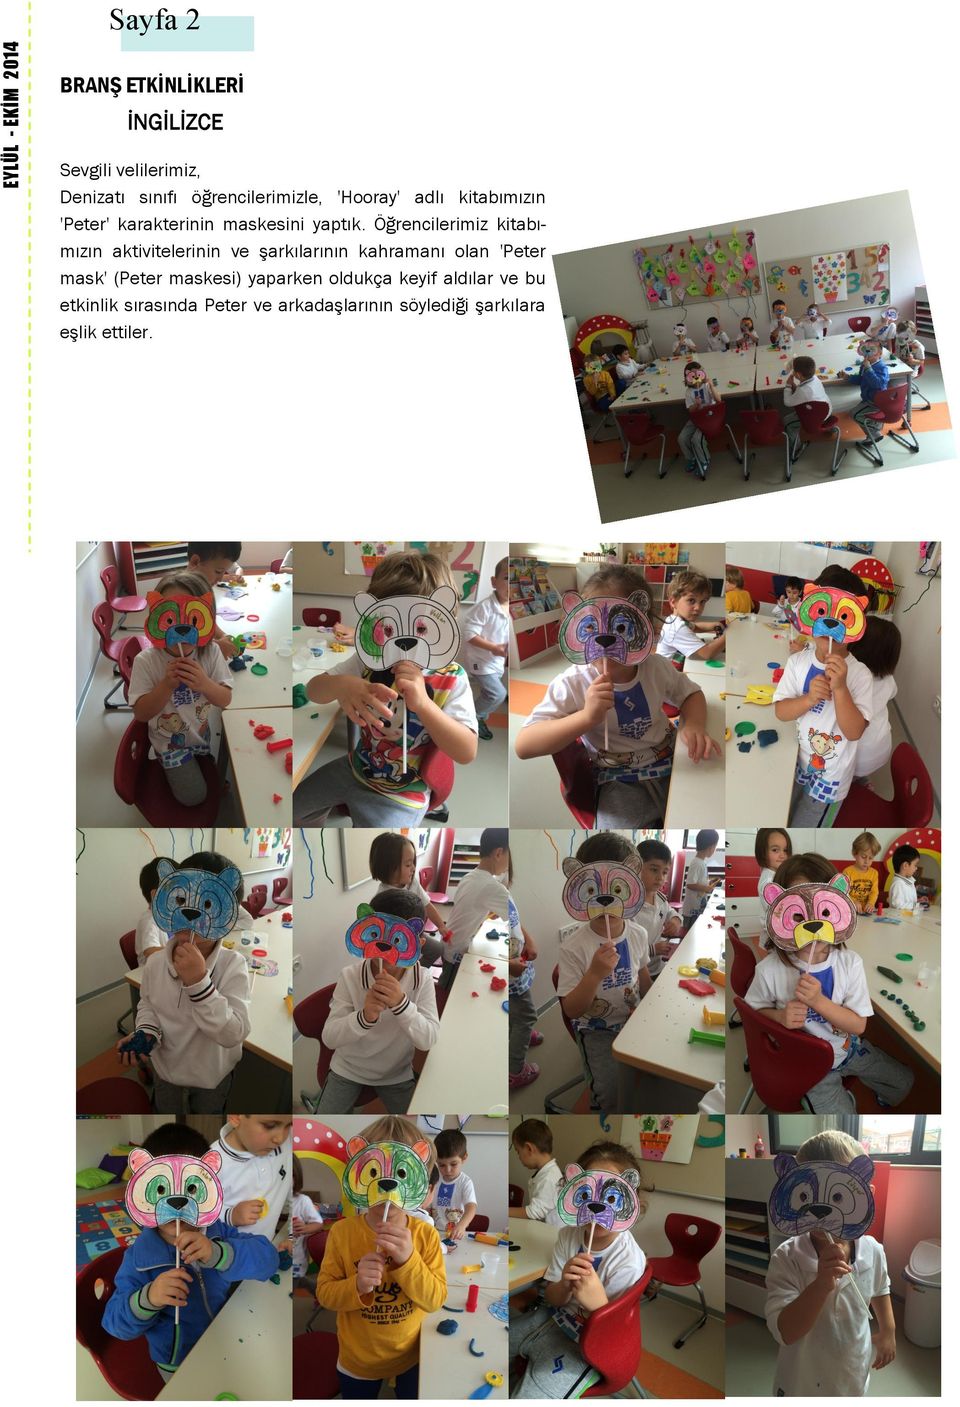 Öğrencilerimiz kitabımızın aktivitelerinin ve şarkılarının kahramanı olan 'Peter mask' (Peter